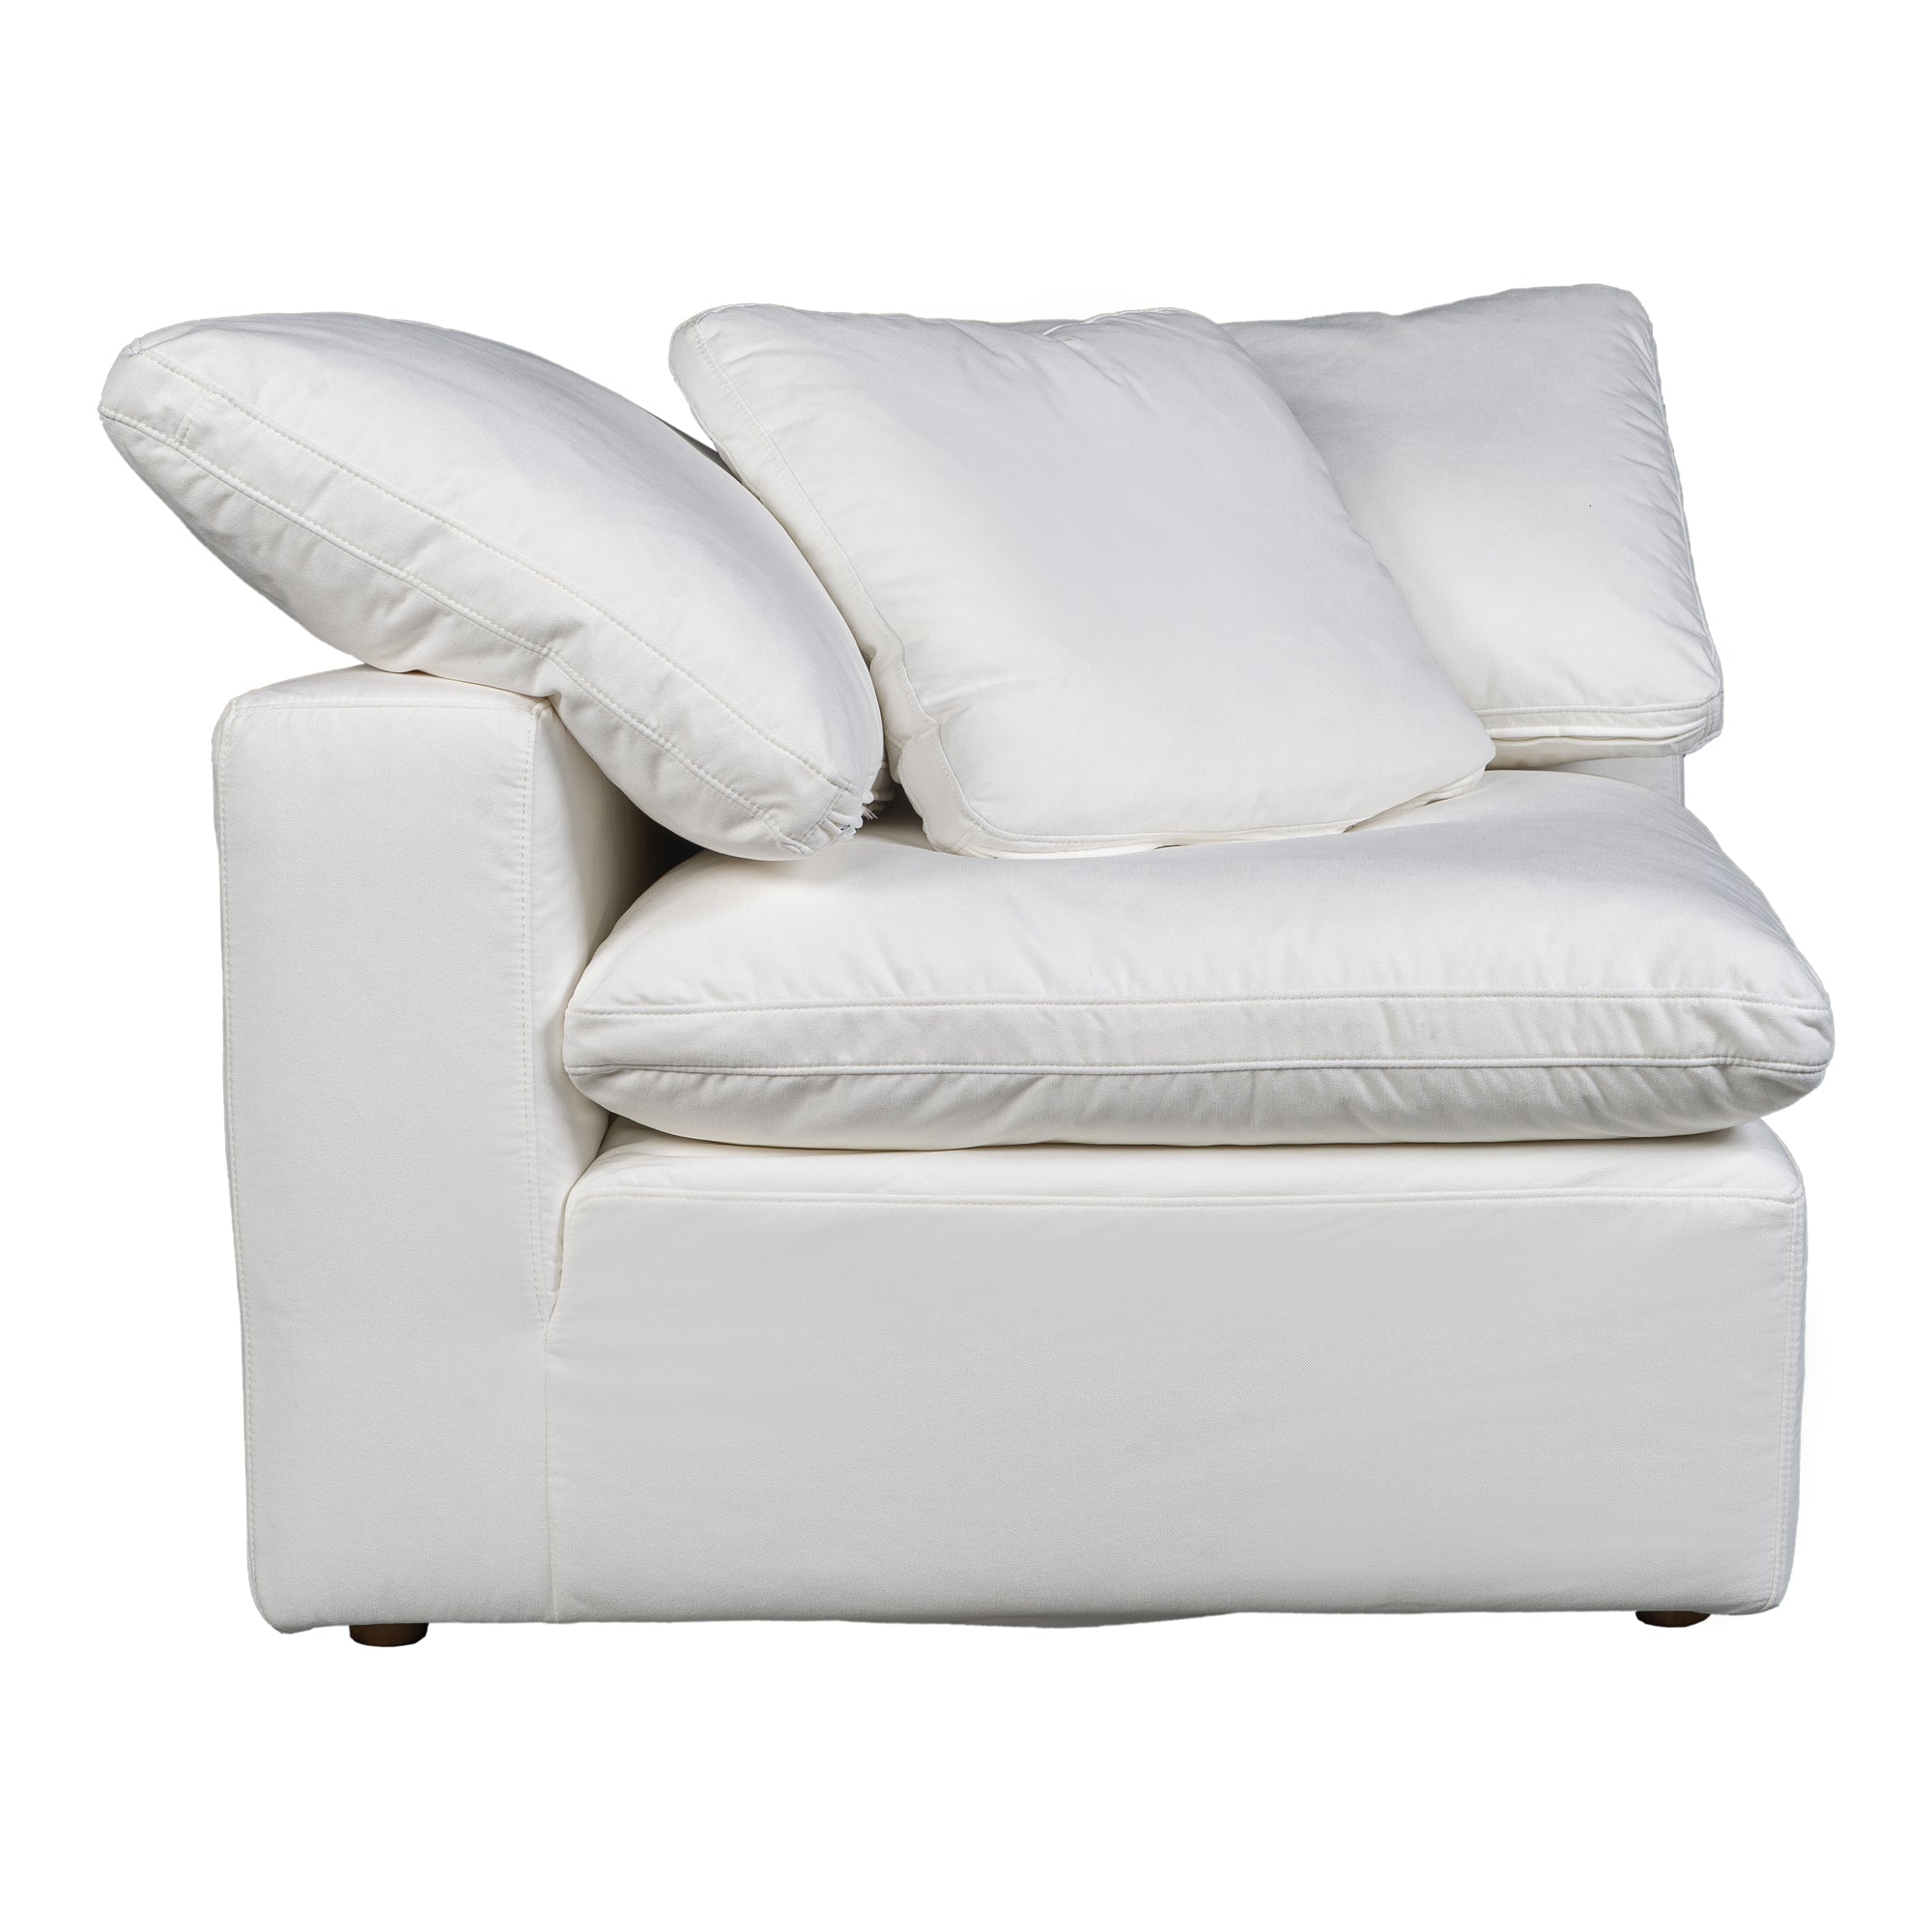 Terra Condo Corner Chair Cream White